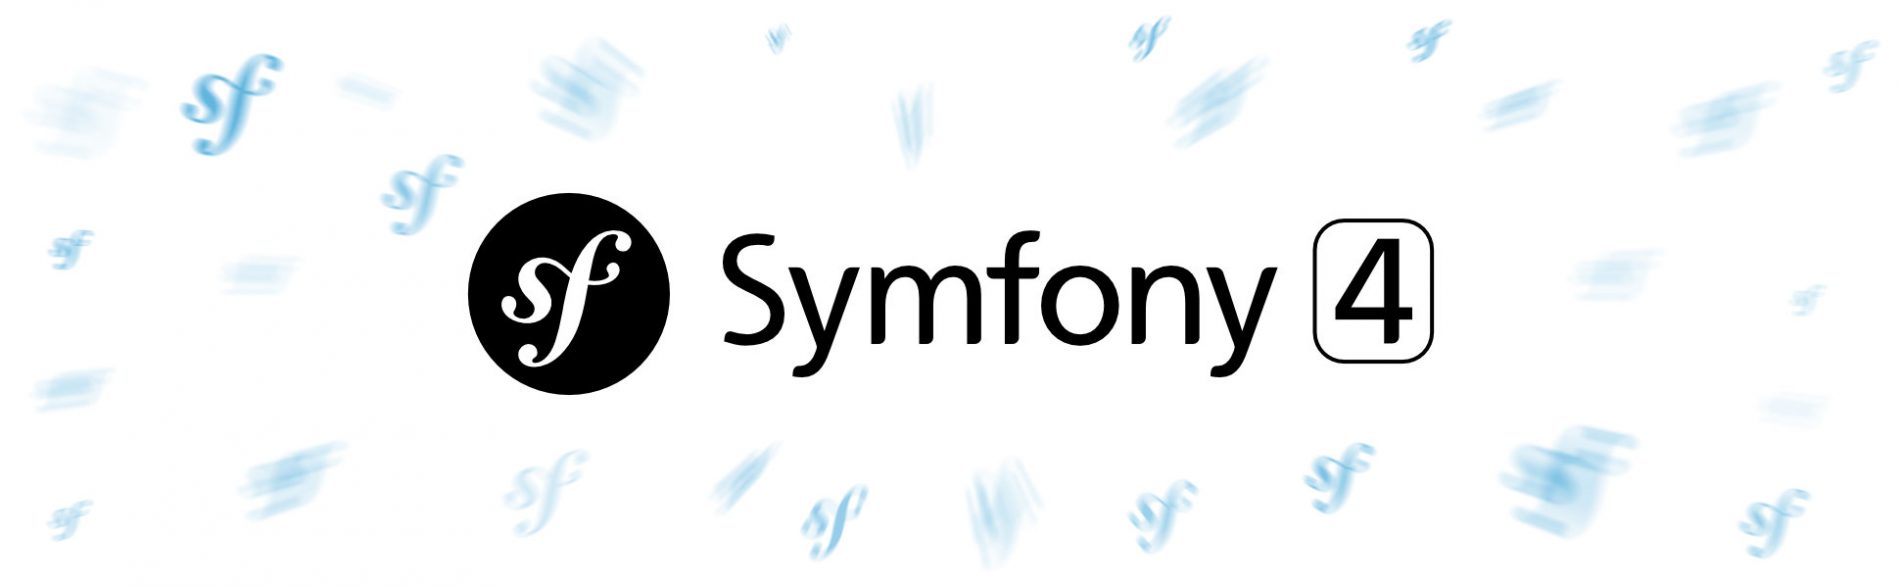 Symfony 4: O que mudou?